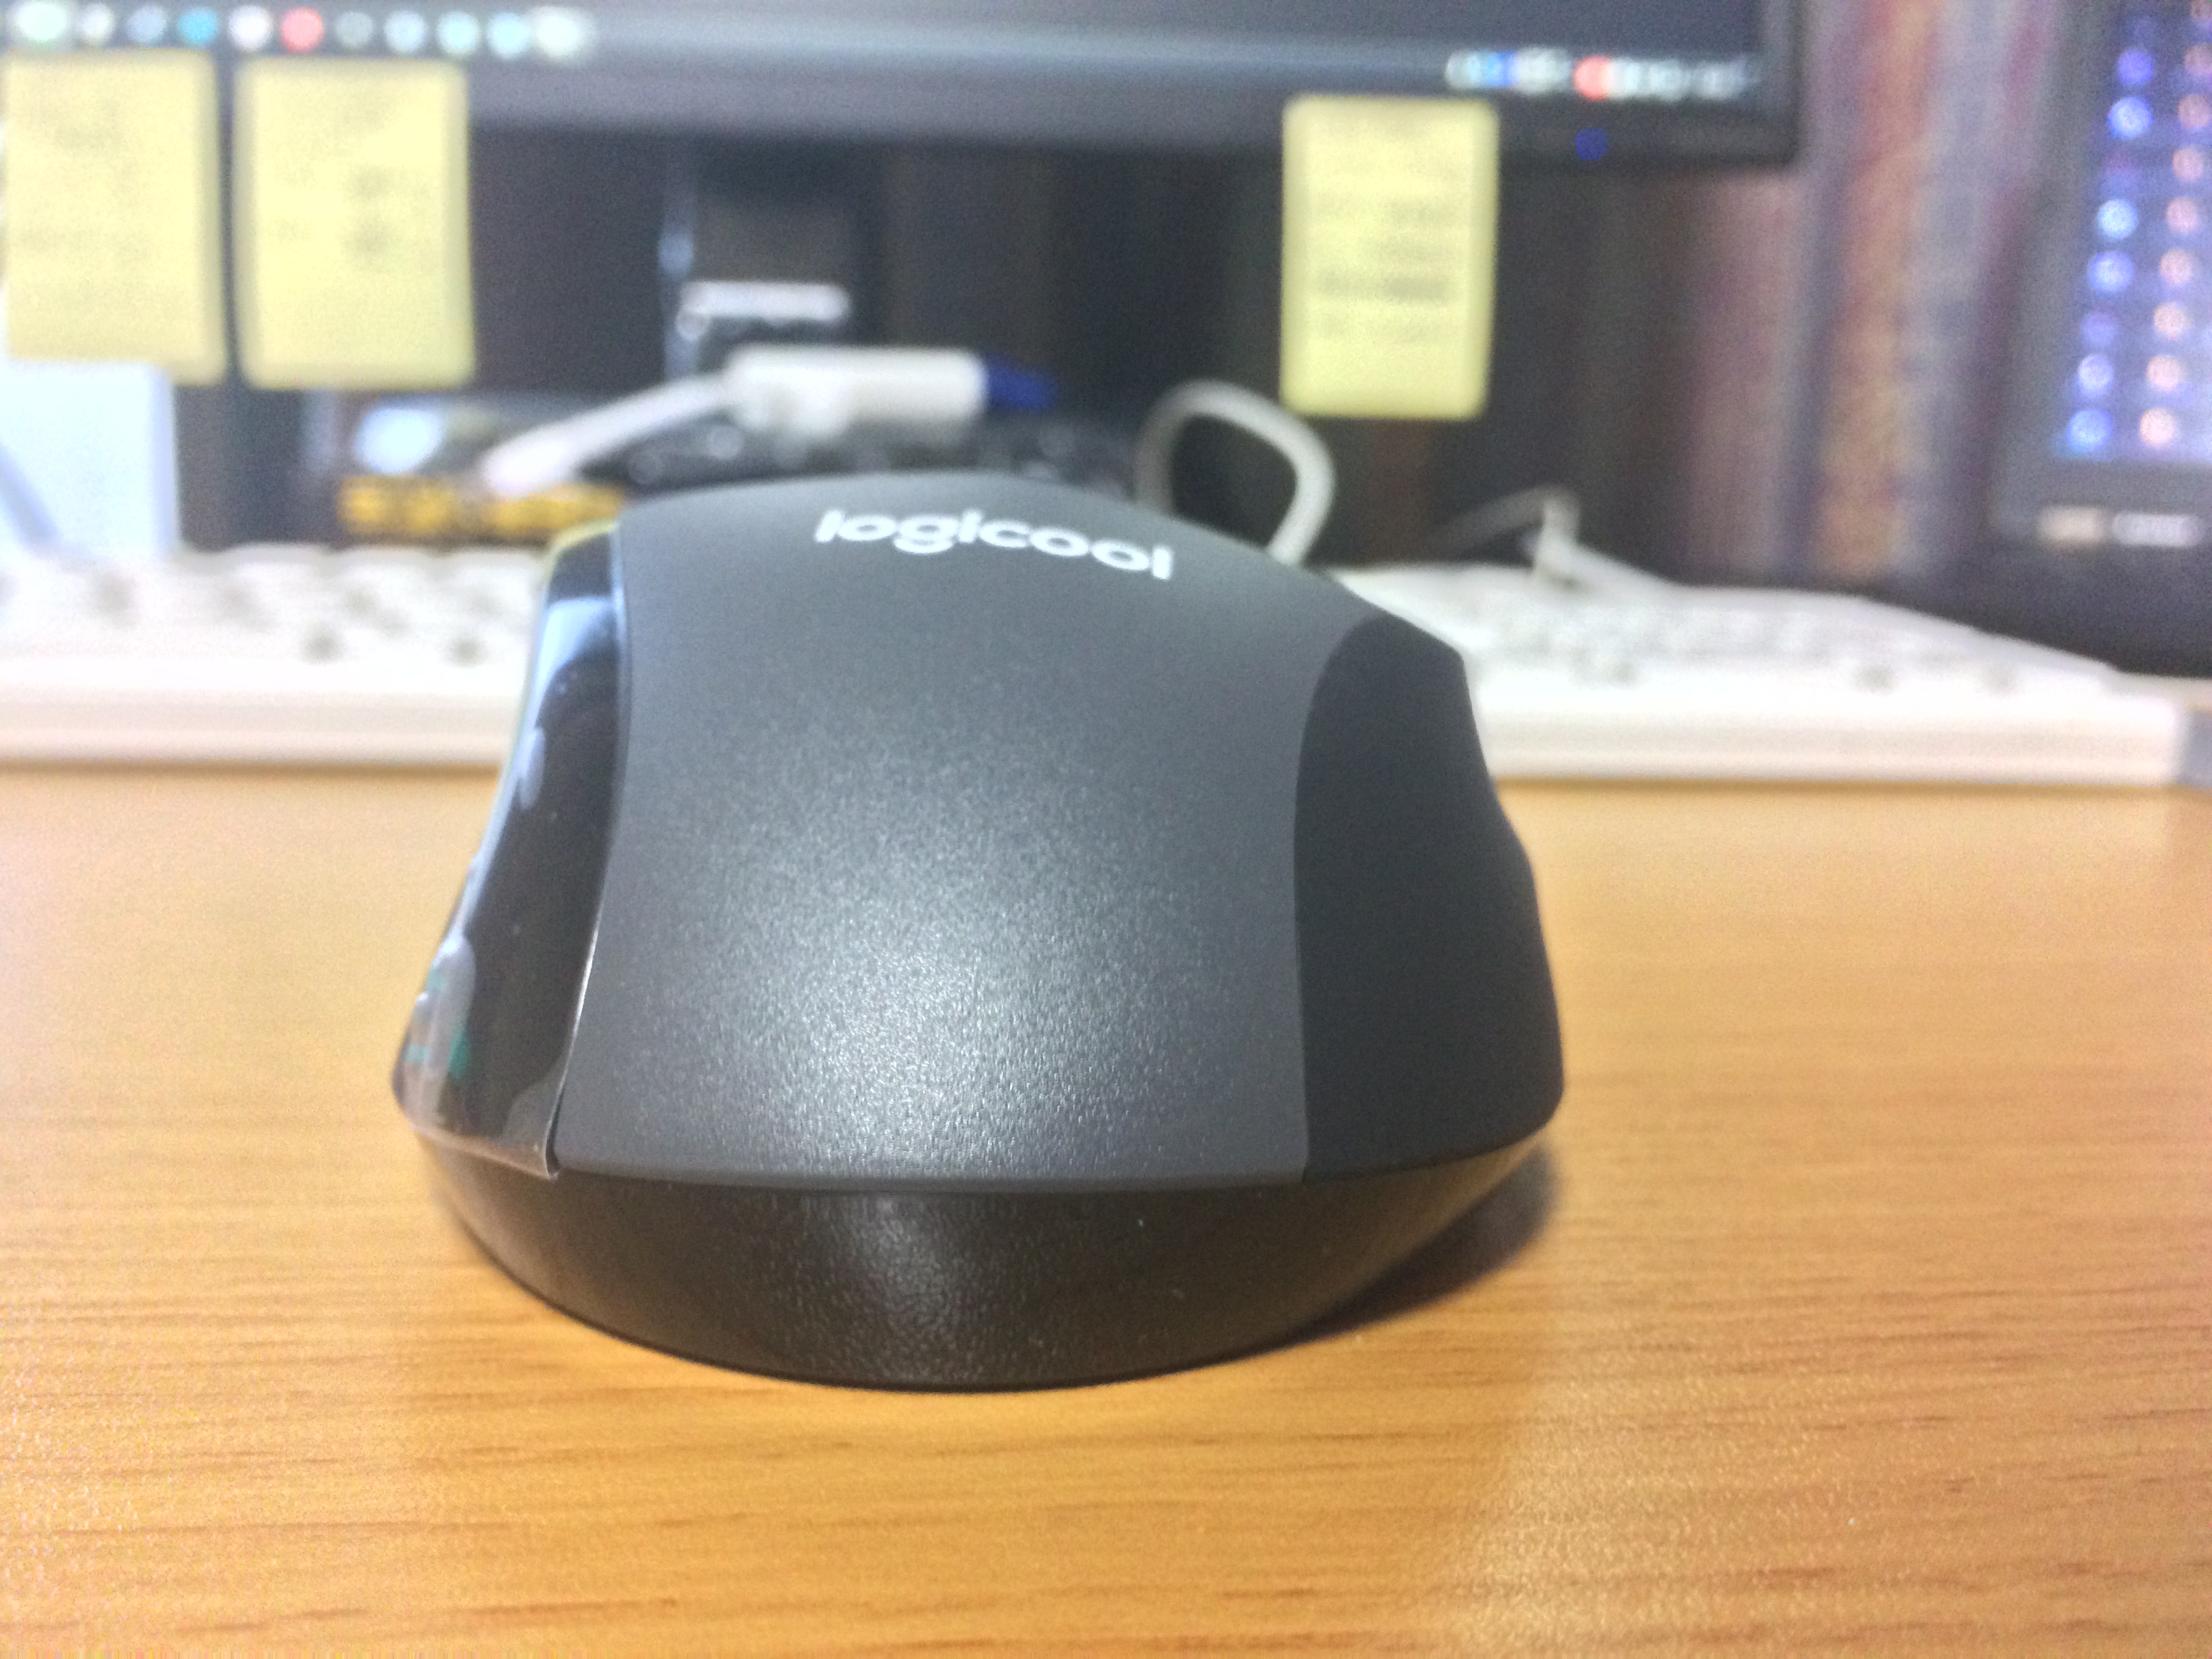 ロジクール(Logicool)のM705 Marathon Mouse)を後ろから撮影した写真